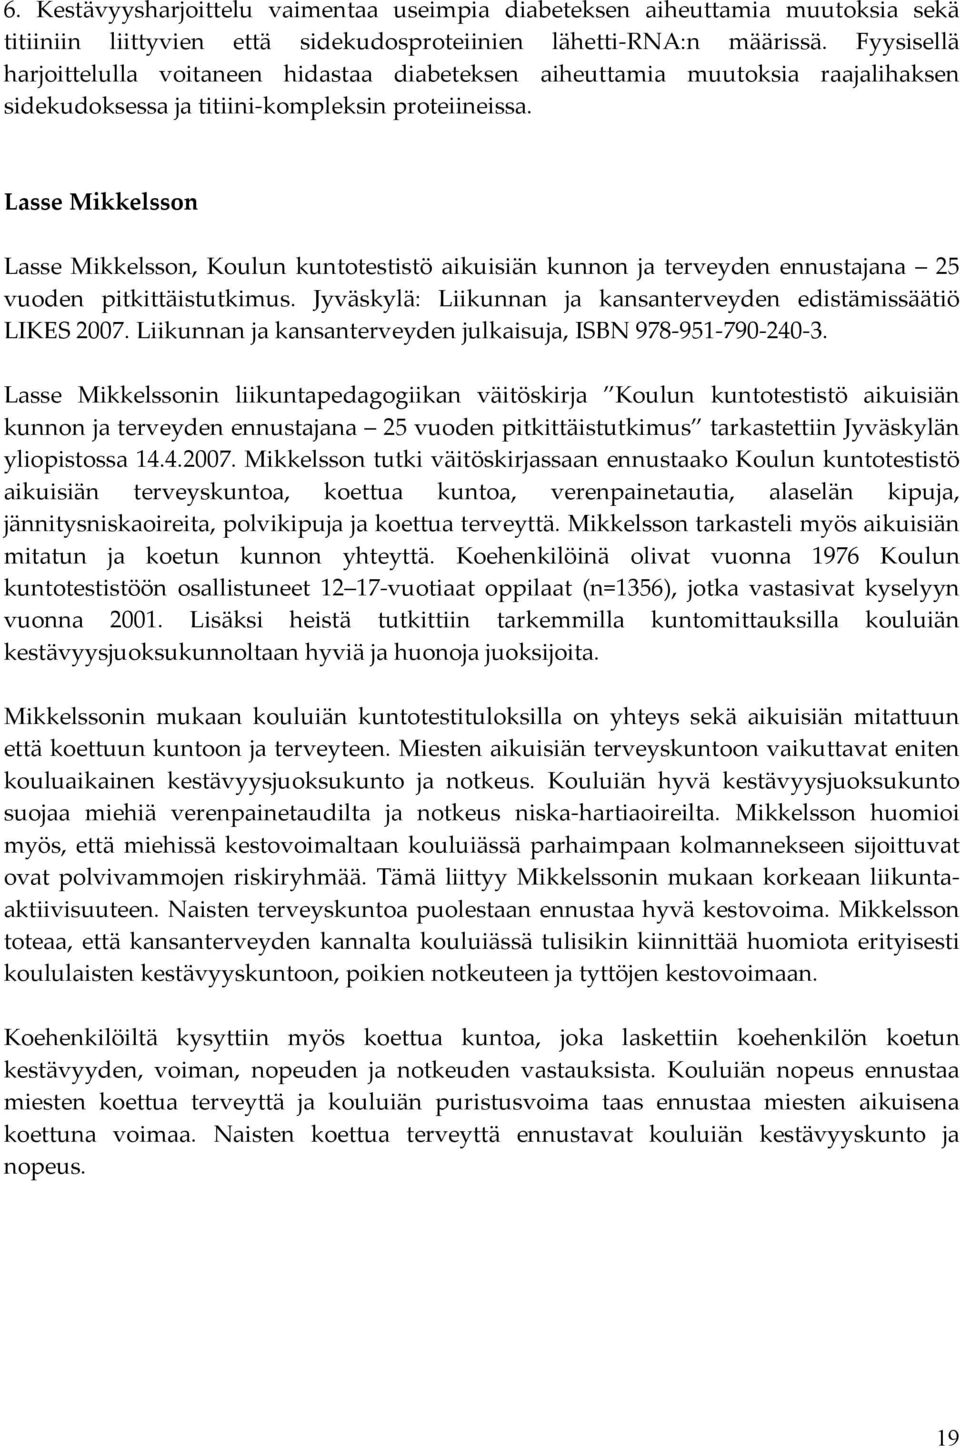 Lasse Mikkelsson Lasse Mikkelsson, Koulun kuntotestistö aikuisiän kunnon ja terveyden ennustajana 25 vuoden pitkittäistutkimus. Jyväskylä: Liikunnan ja kansanterveyden edistämissäätiö LIKES 2007.